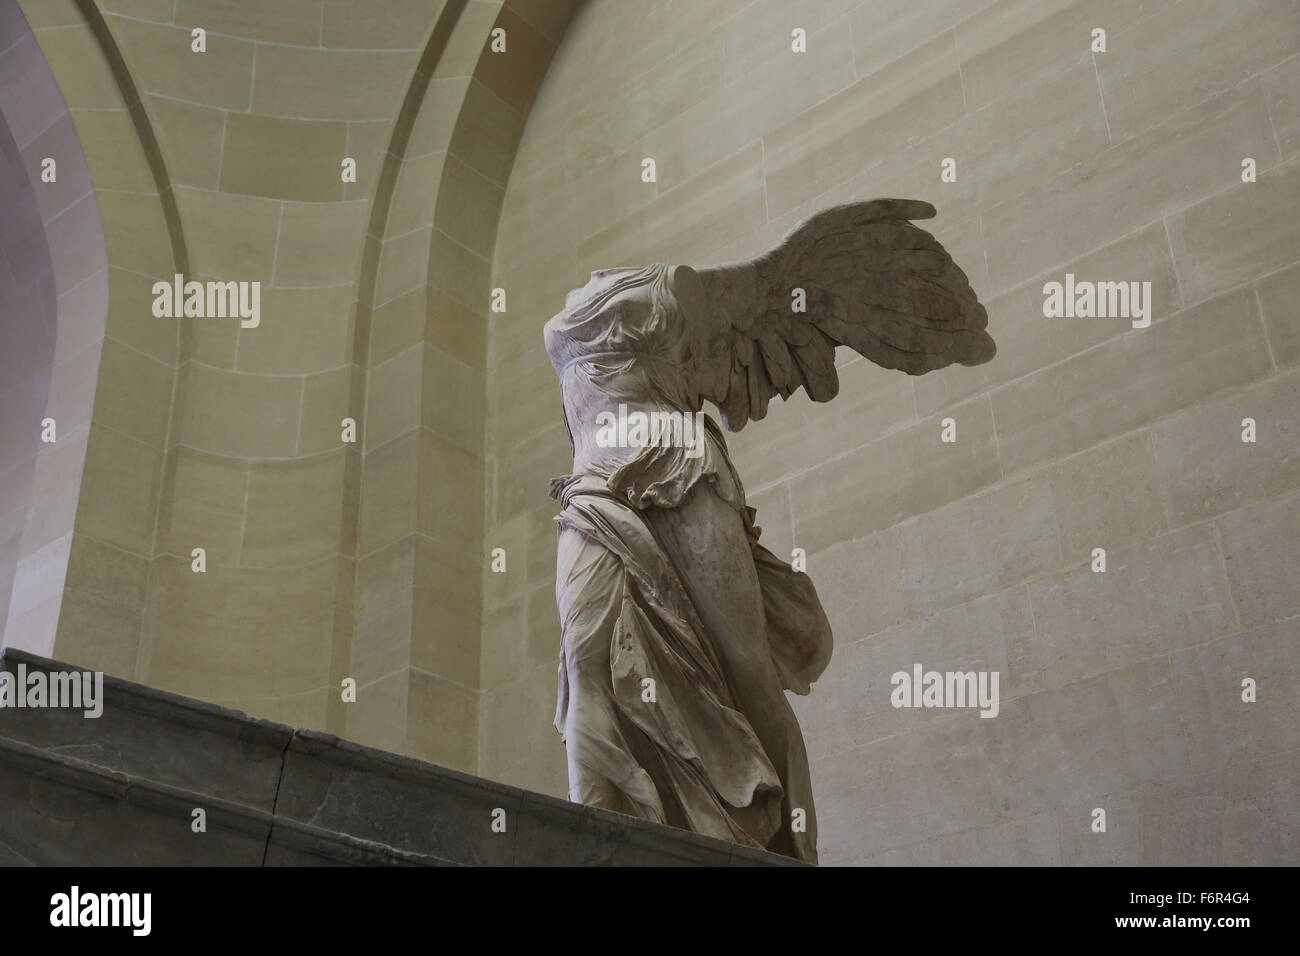 Hellenistischen Stil. Winged Sieg von Samothrace. 2. Jahrhundert vor Christus. Marmor. Louvre-Museum. Paris. Frankreich. Stockfoto